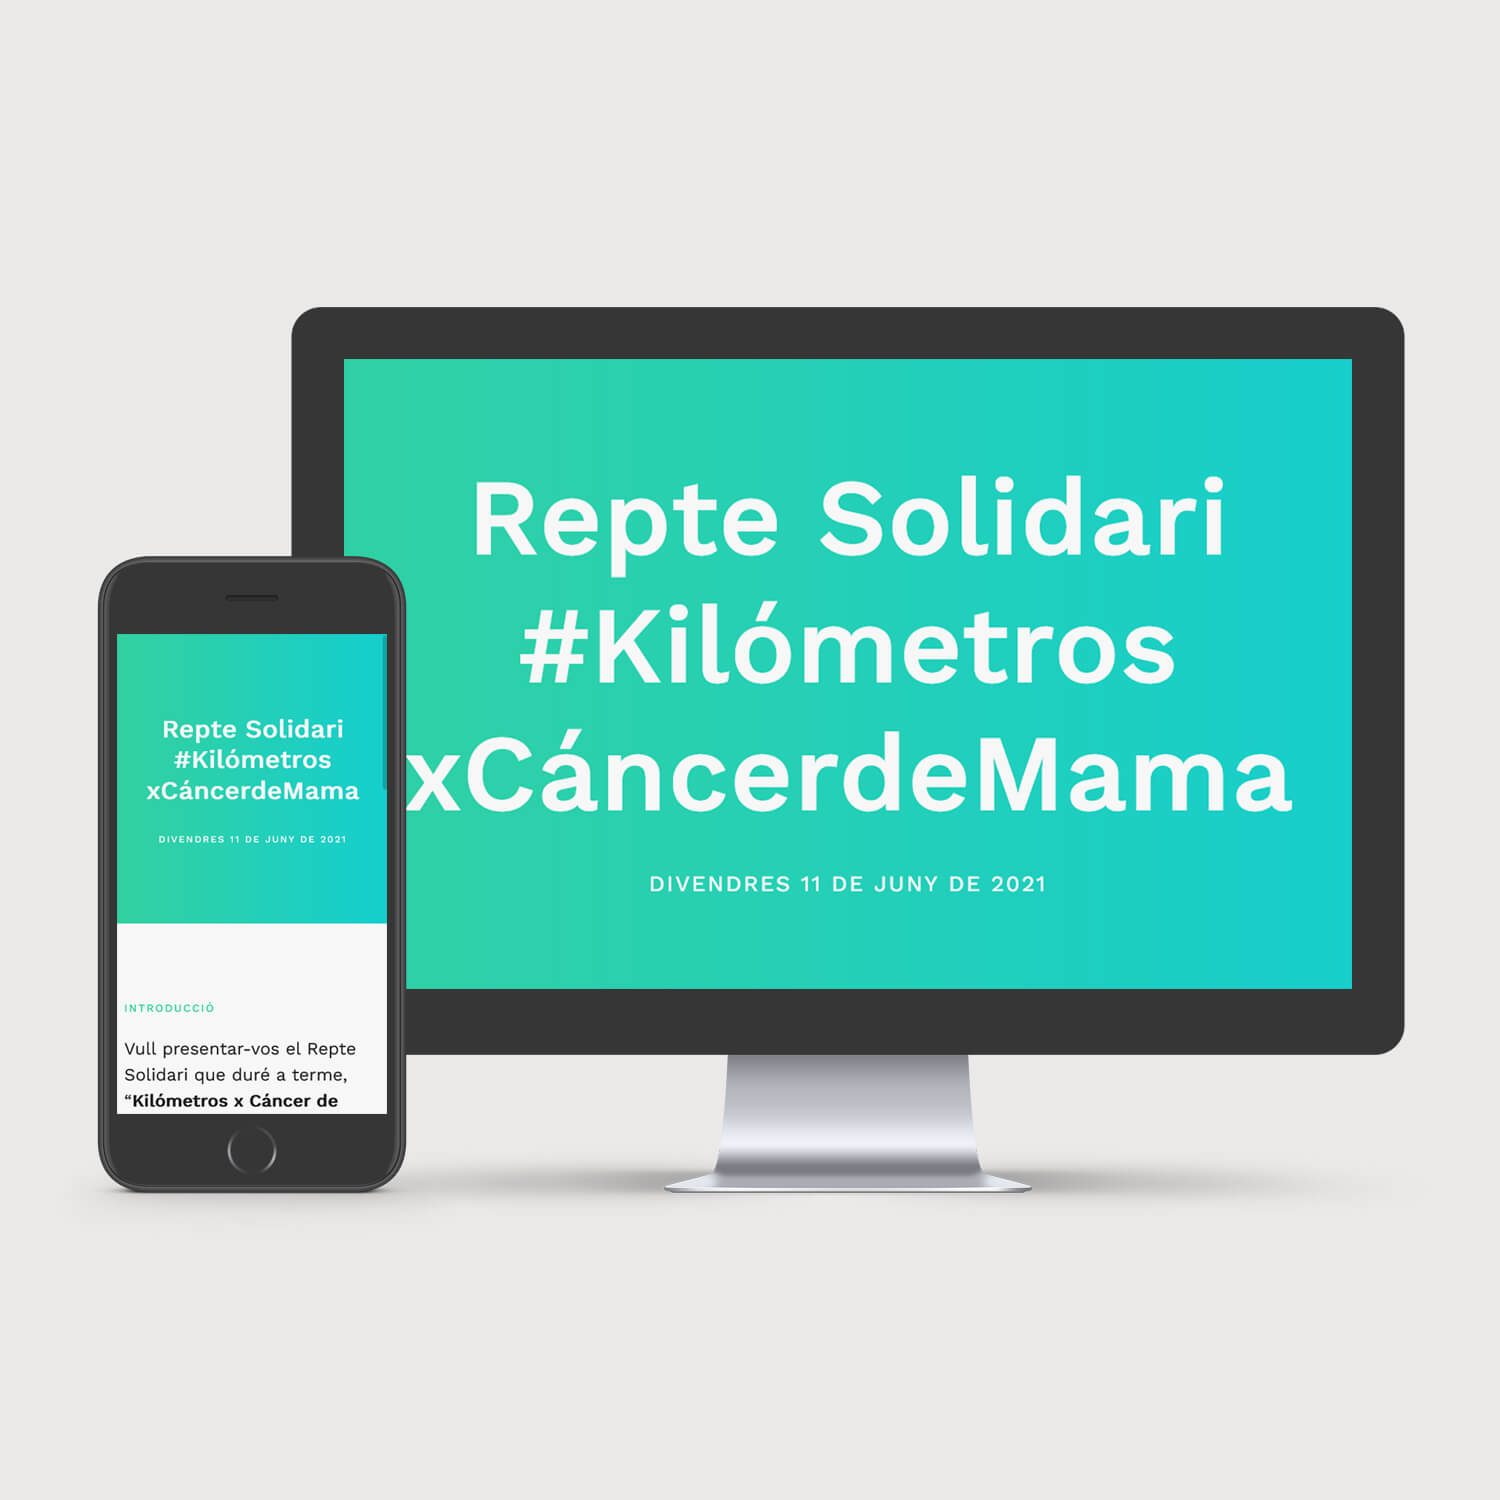 Disseny del web Repte Solidari Kilómetros x Cáncer de Mama